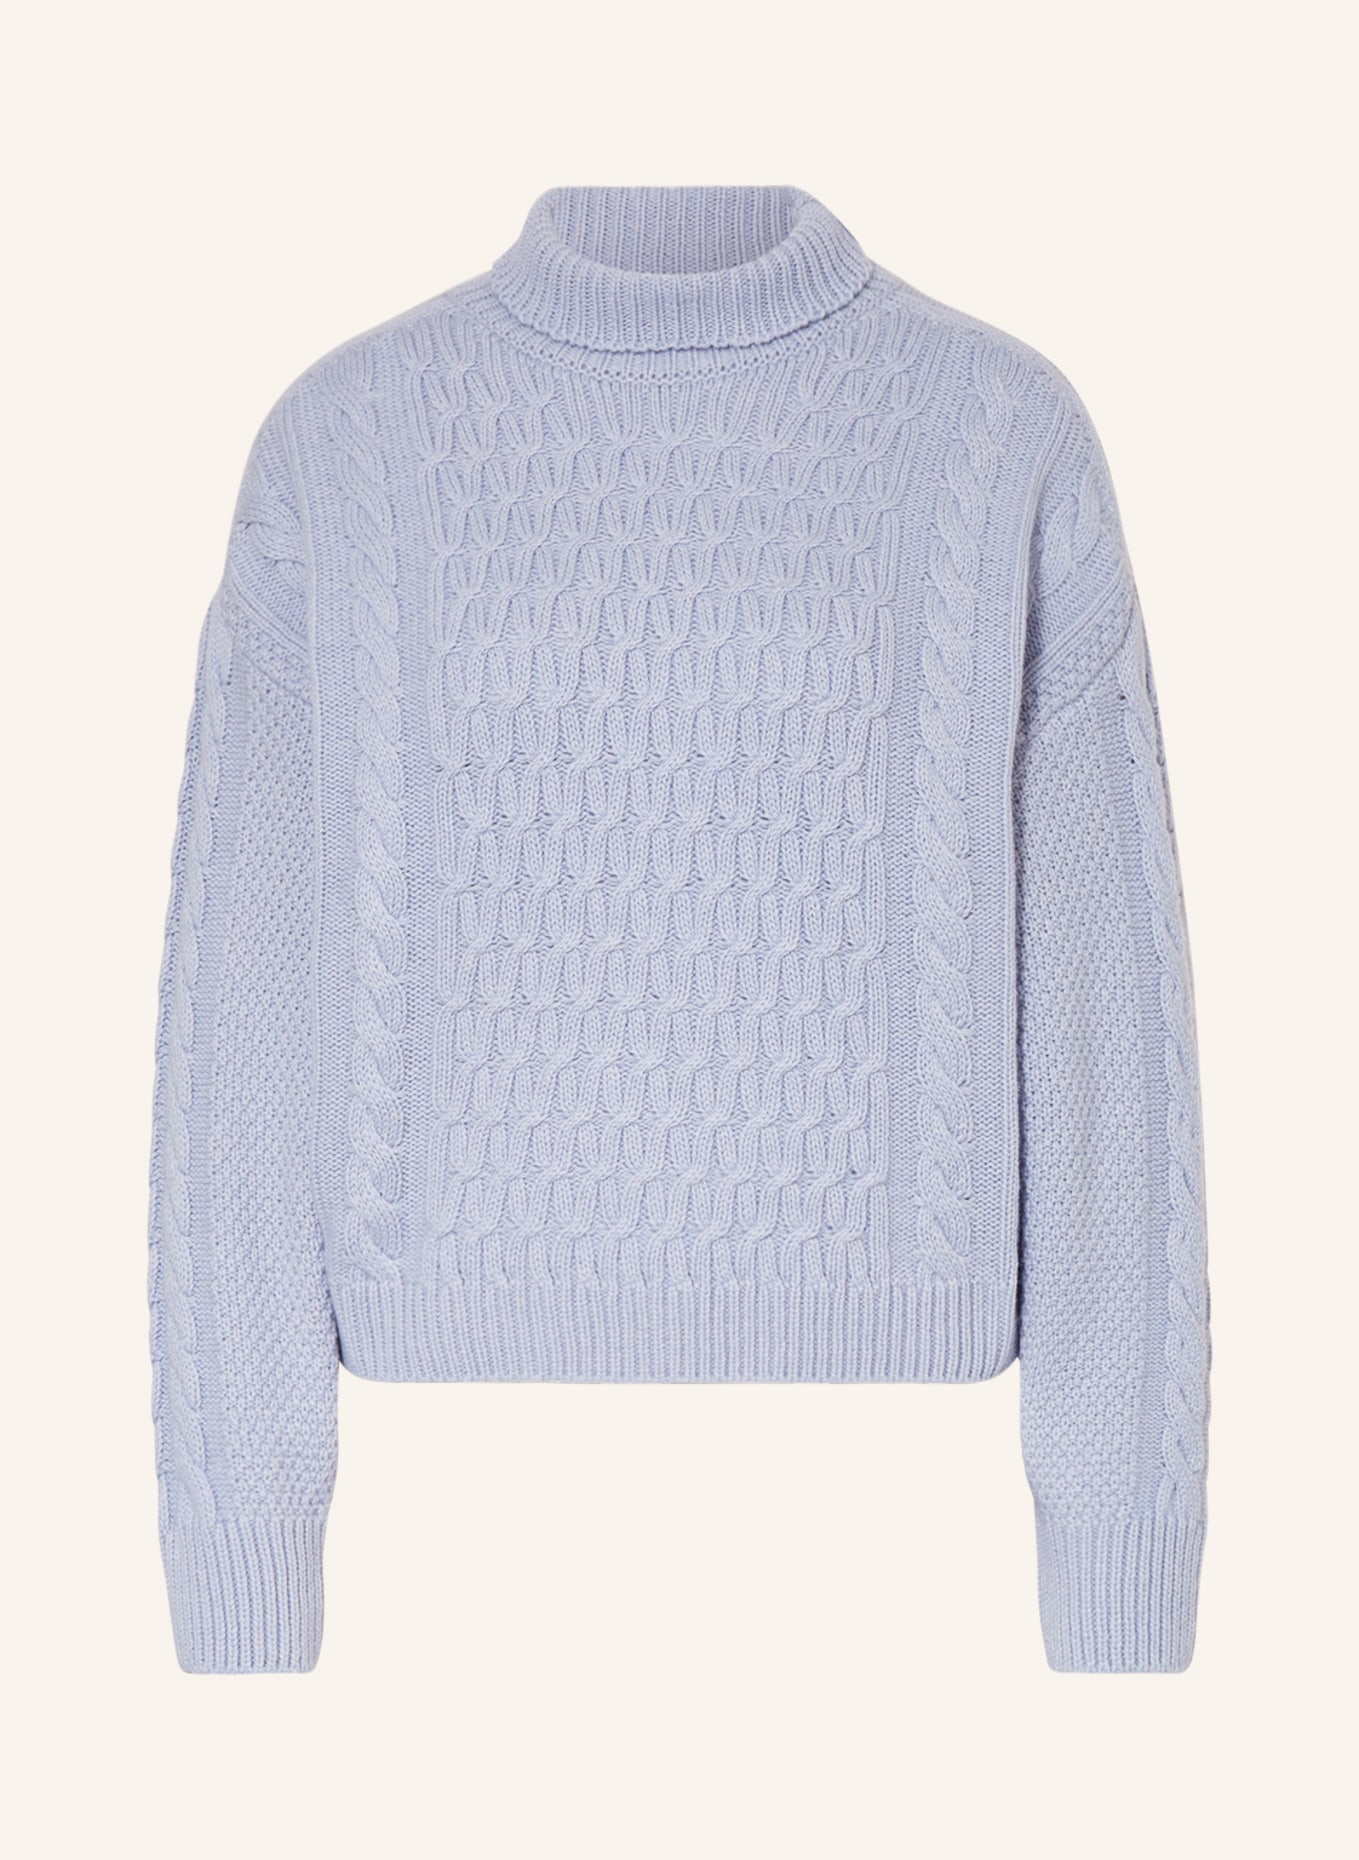 ANTONELLI firenze Sweater, Color: LIGHT BLUE (Image 1)